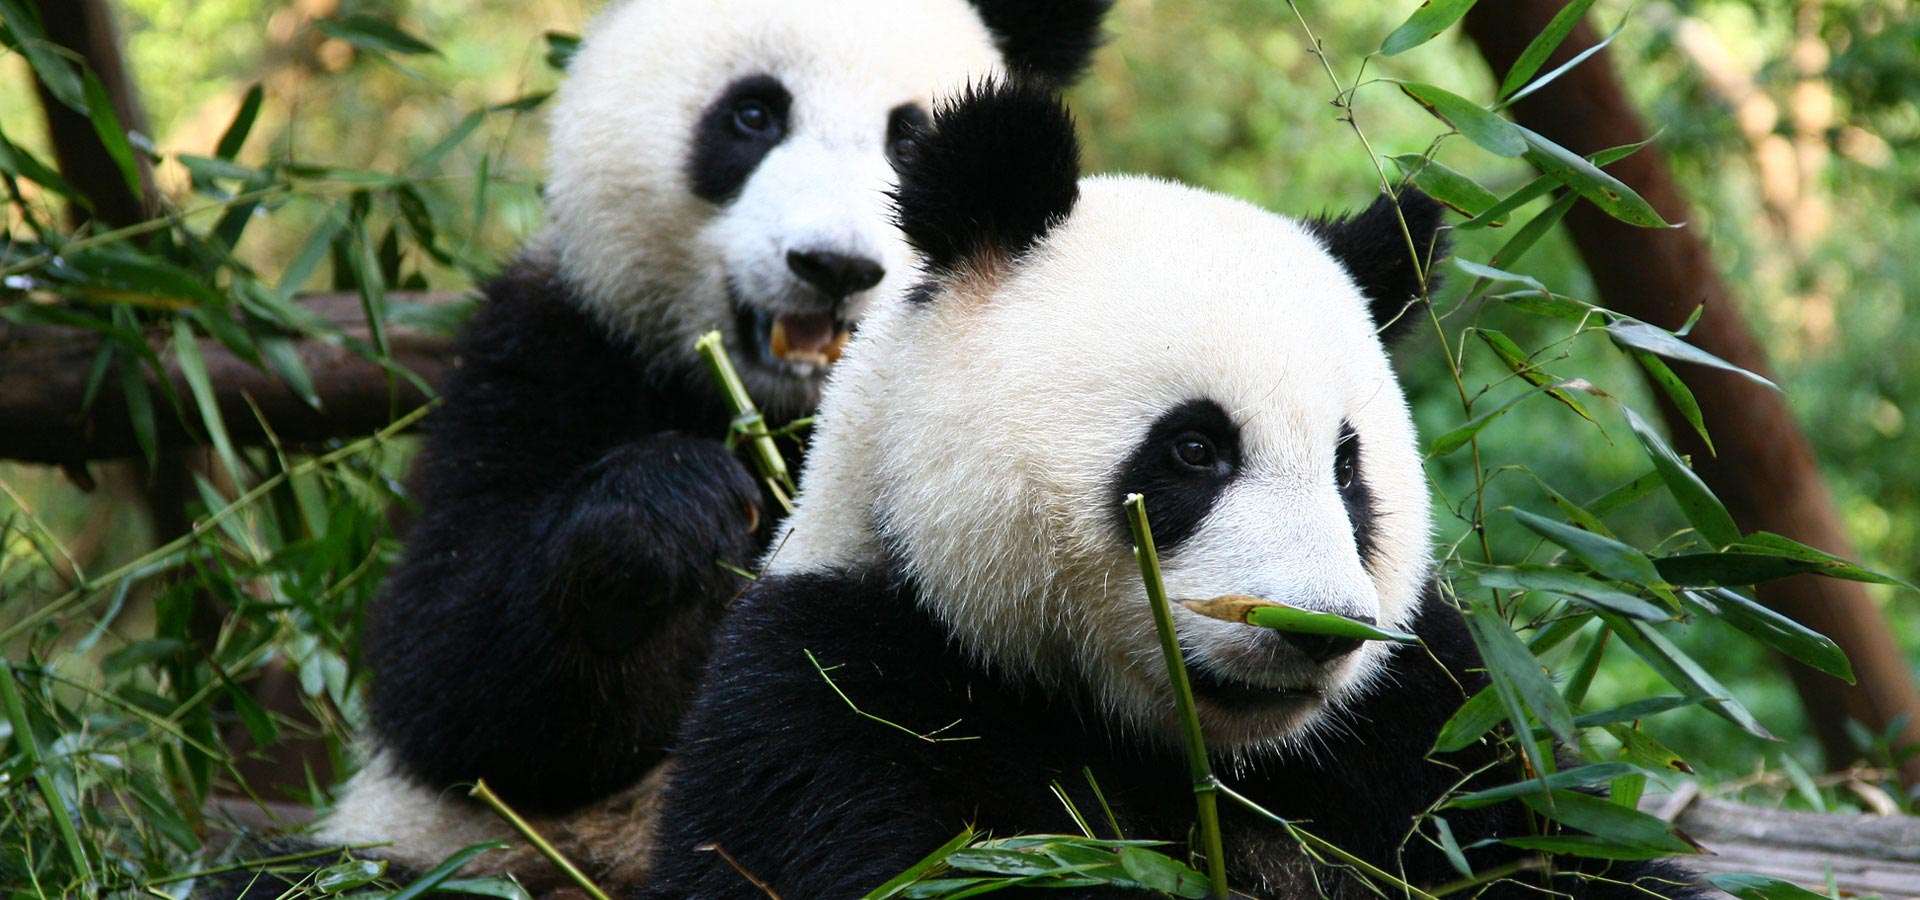 Купить карту с пандой. Ареал обитания панды. Ареал обитания большой панды. Панда среда обитания материк. Животные Китая.